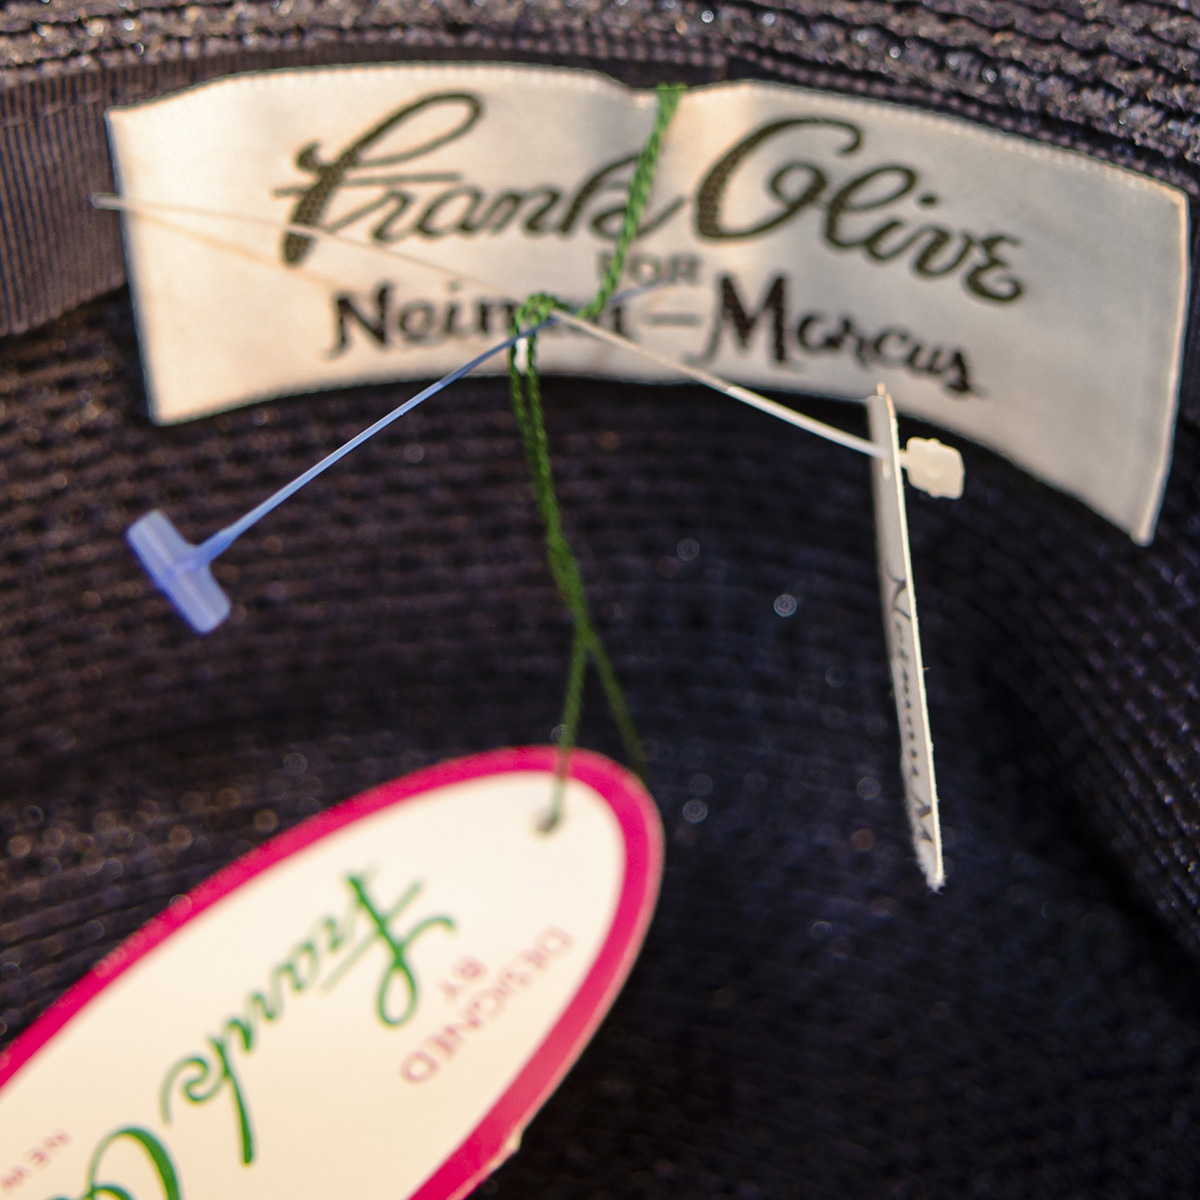 Frank olive hat label